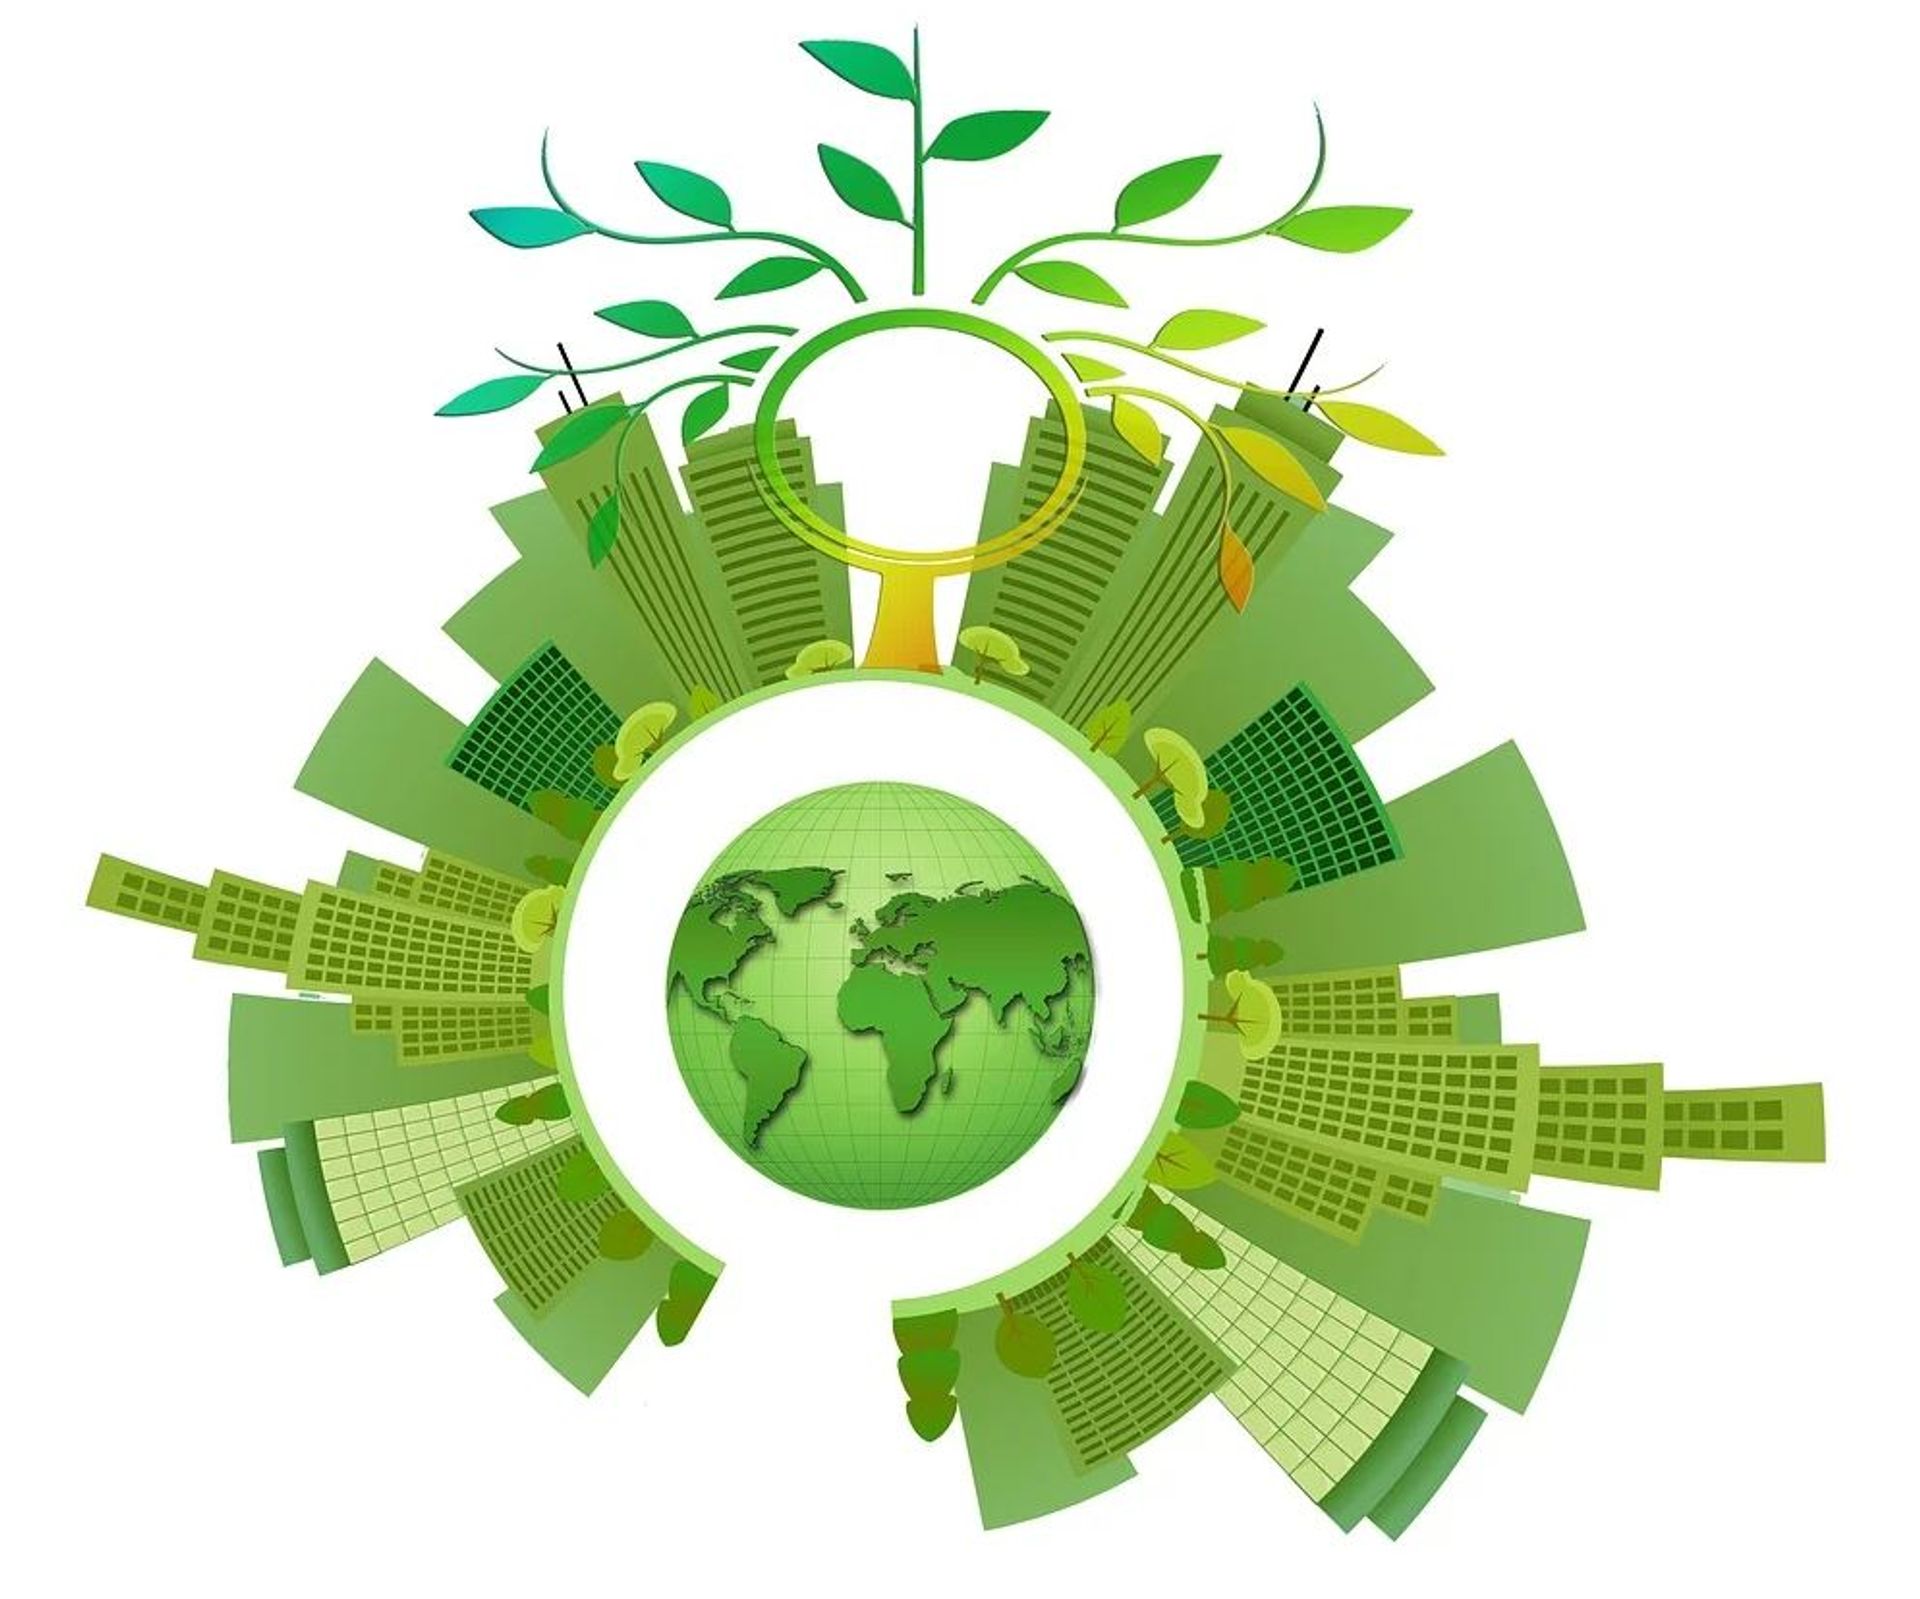 Krajowy Plan na rzecz Energii i Klimatu do 2030 r. to ok. 300 mld zł inwestycji w źródła wytwórcze